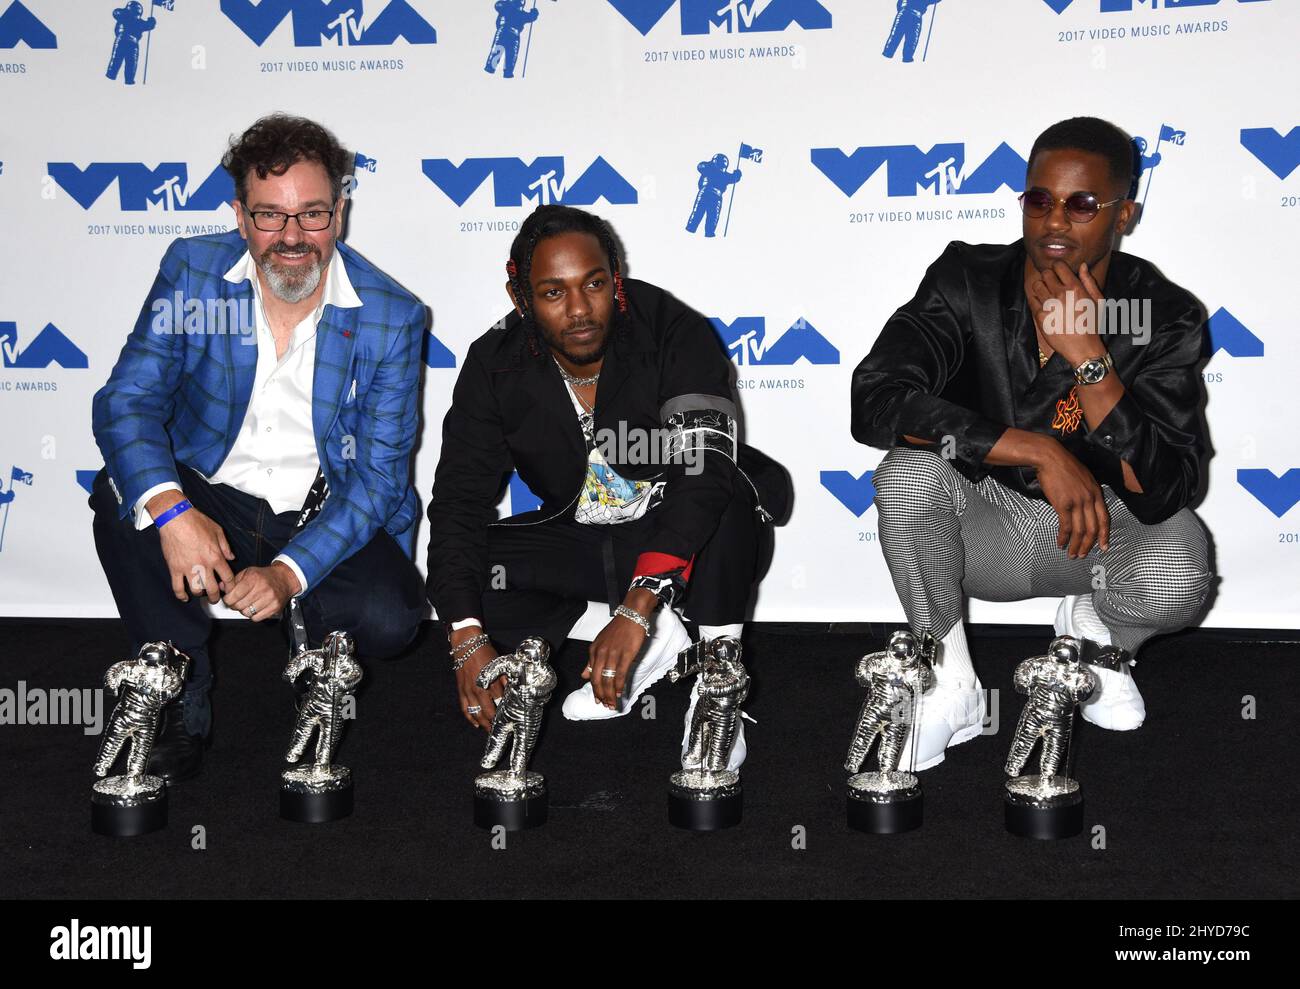 Dave Meyers, Kendrick Lamar et Dave Free dans la salle de presse des MTV Video Music Awards 2017 qui se tiennent au Forum de Los Angeles, USA Banque D'Images